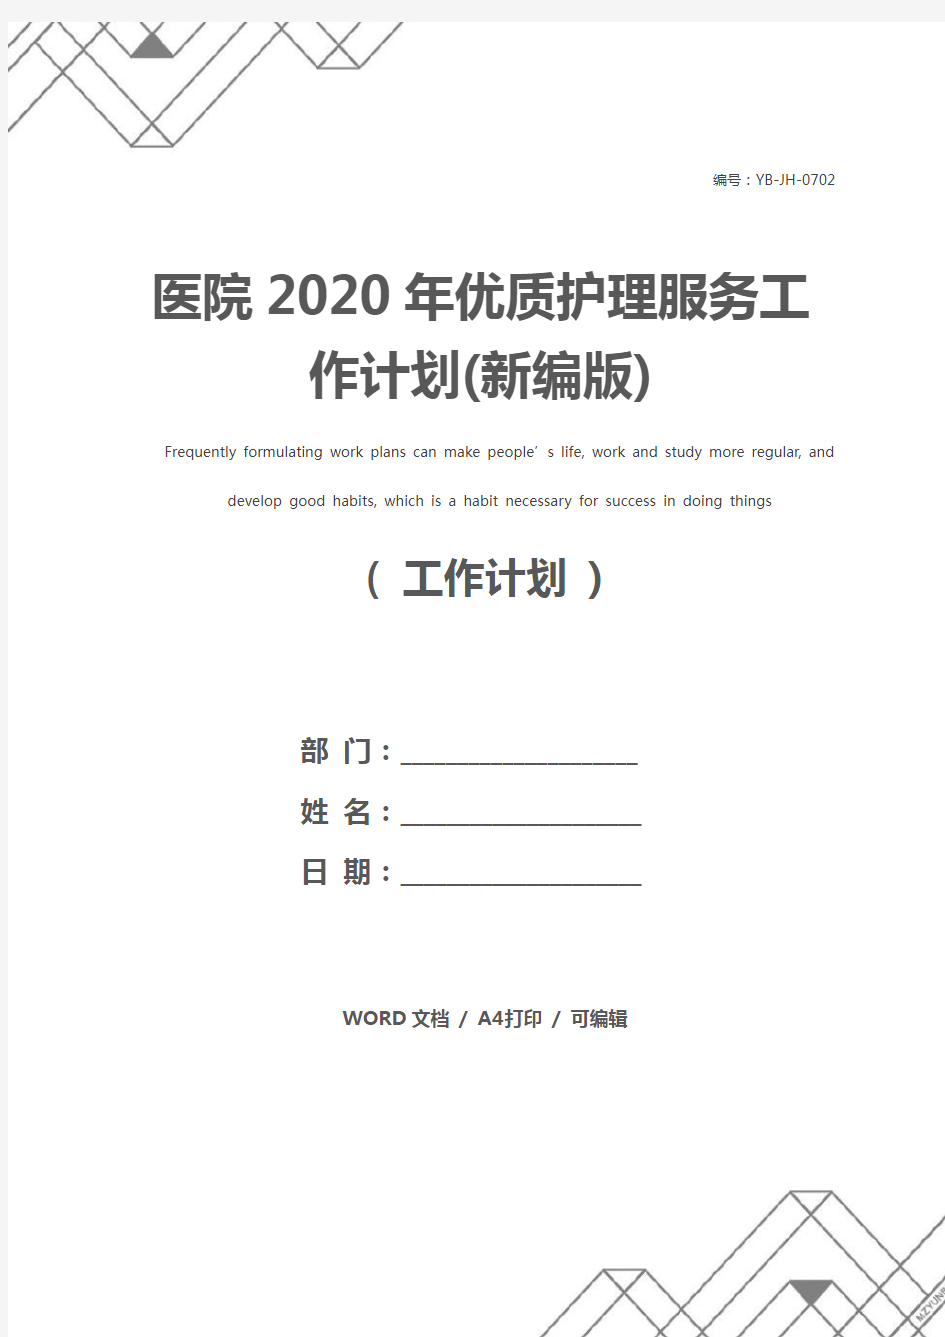 医院2020年优质护理服务工作计划(新编版)